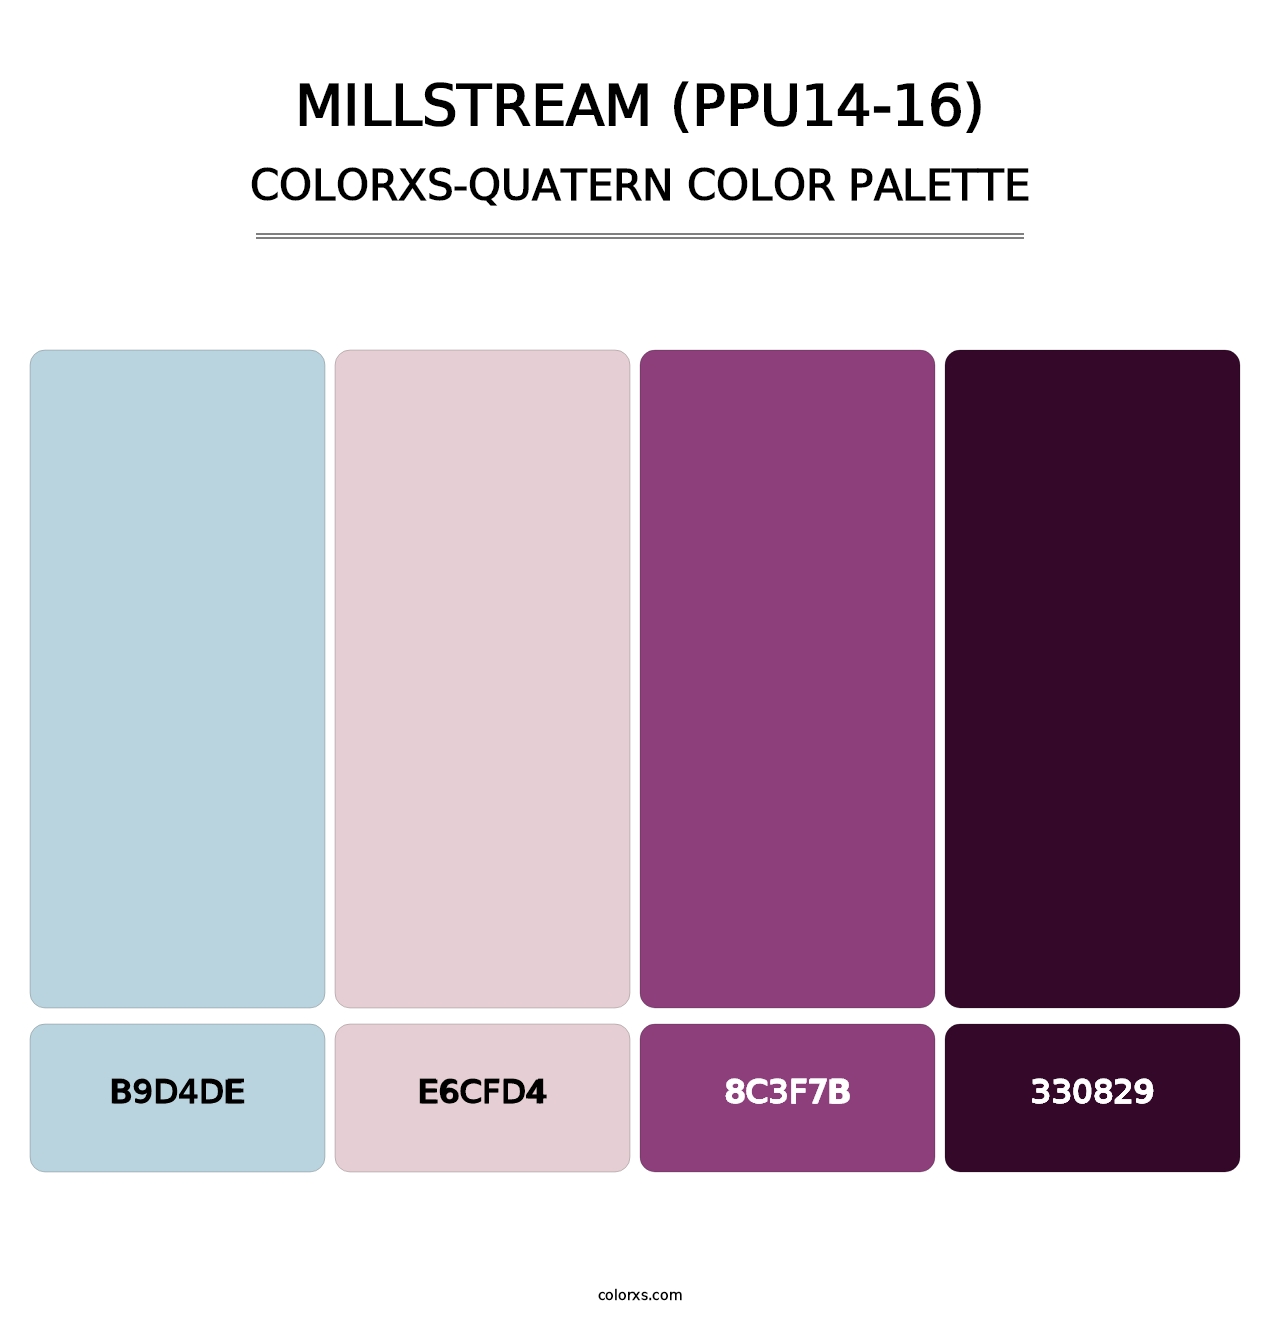 Millstream (PPU14-16) - Colorxs Quatern Palette